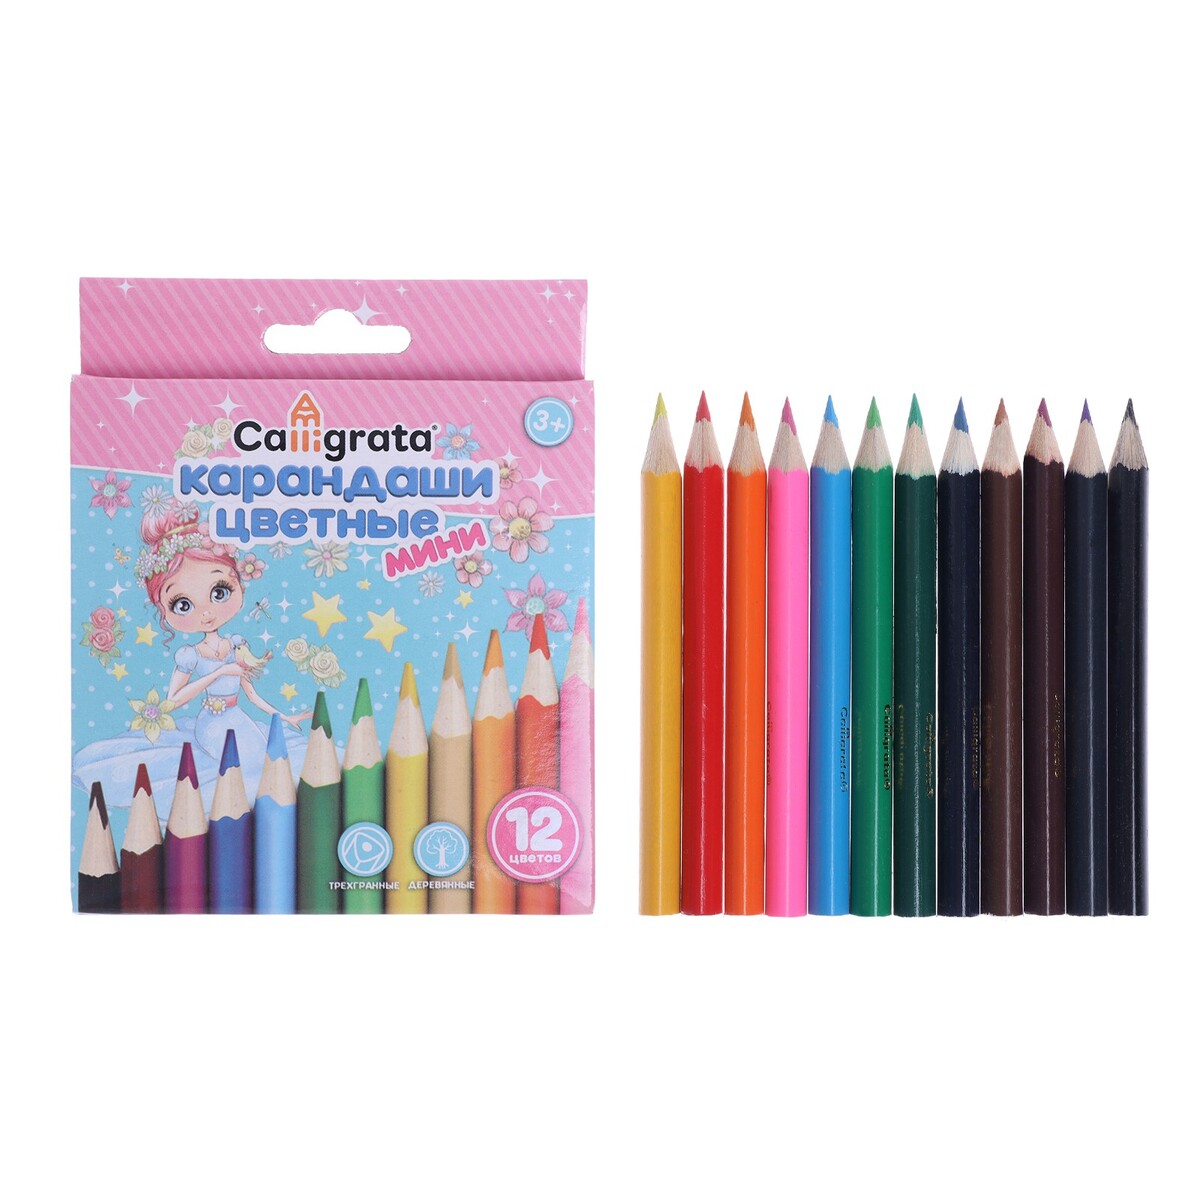 Карандаши цветные 12 цветов calligrata карандаши ные 12 ов мини корпус деревянный треугольный